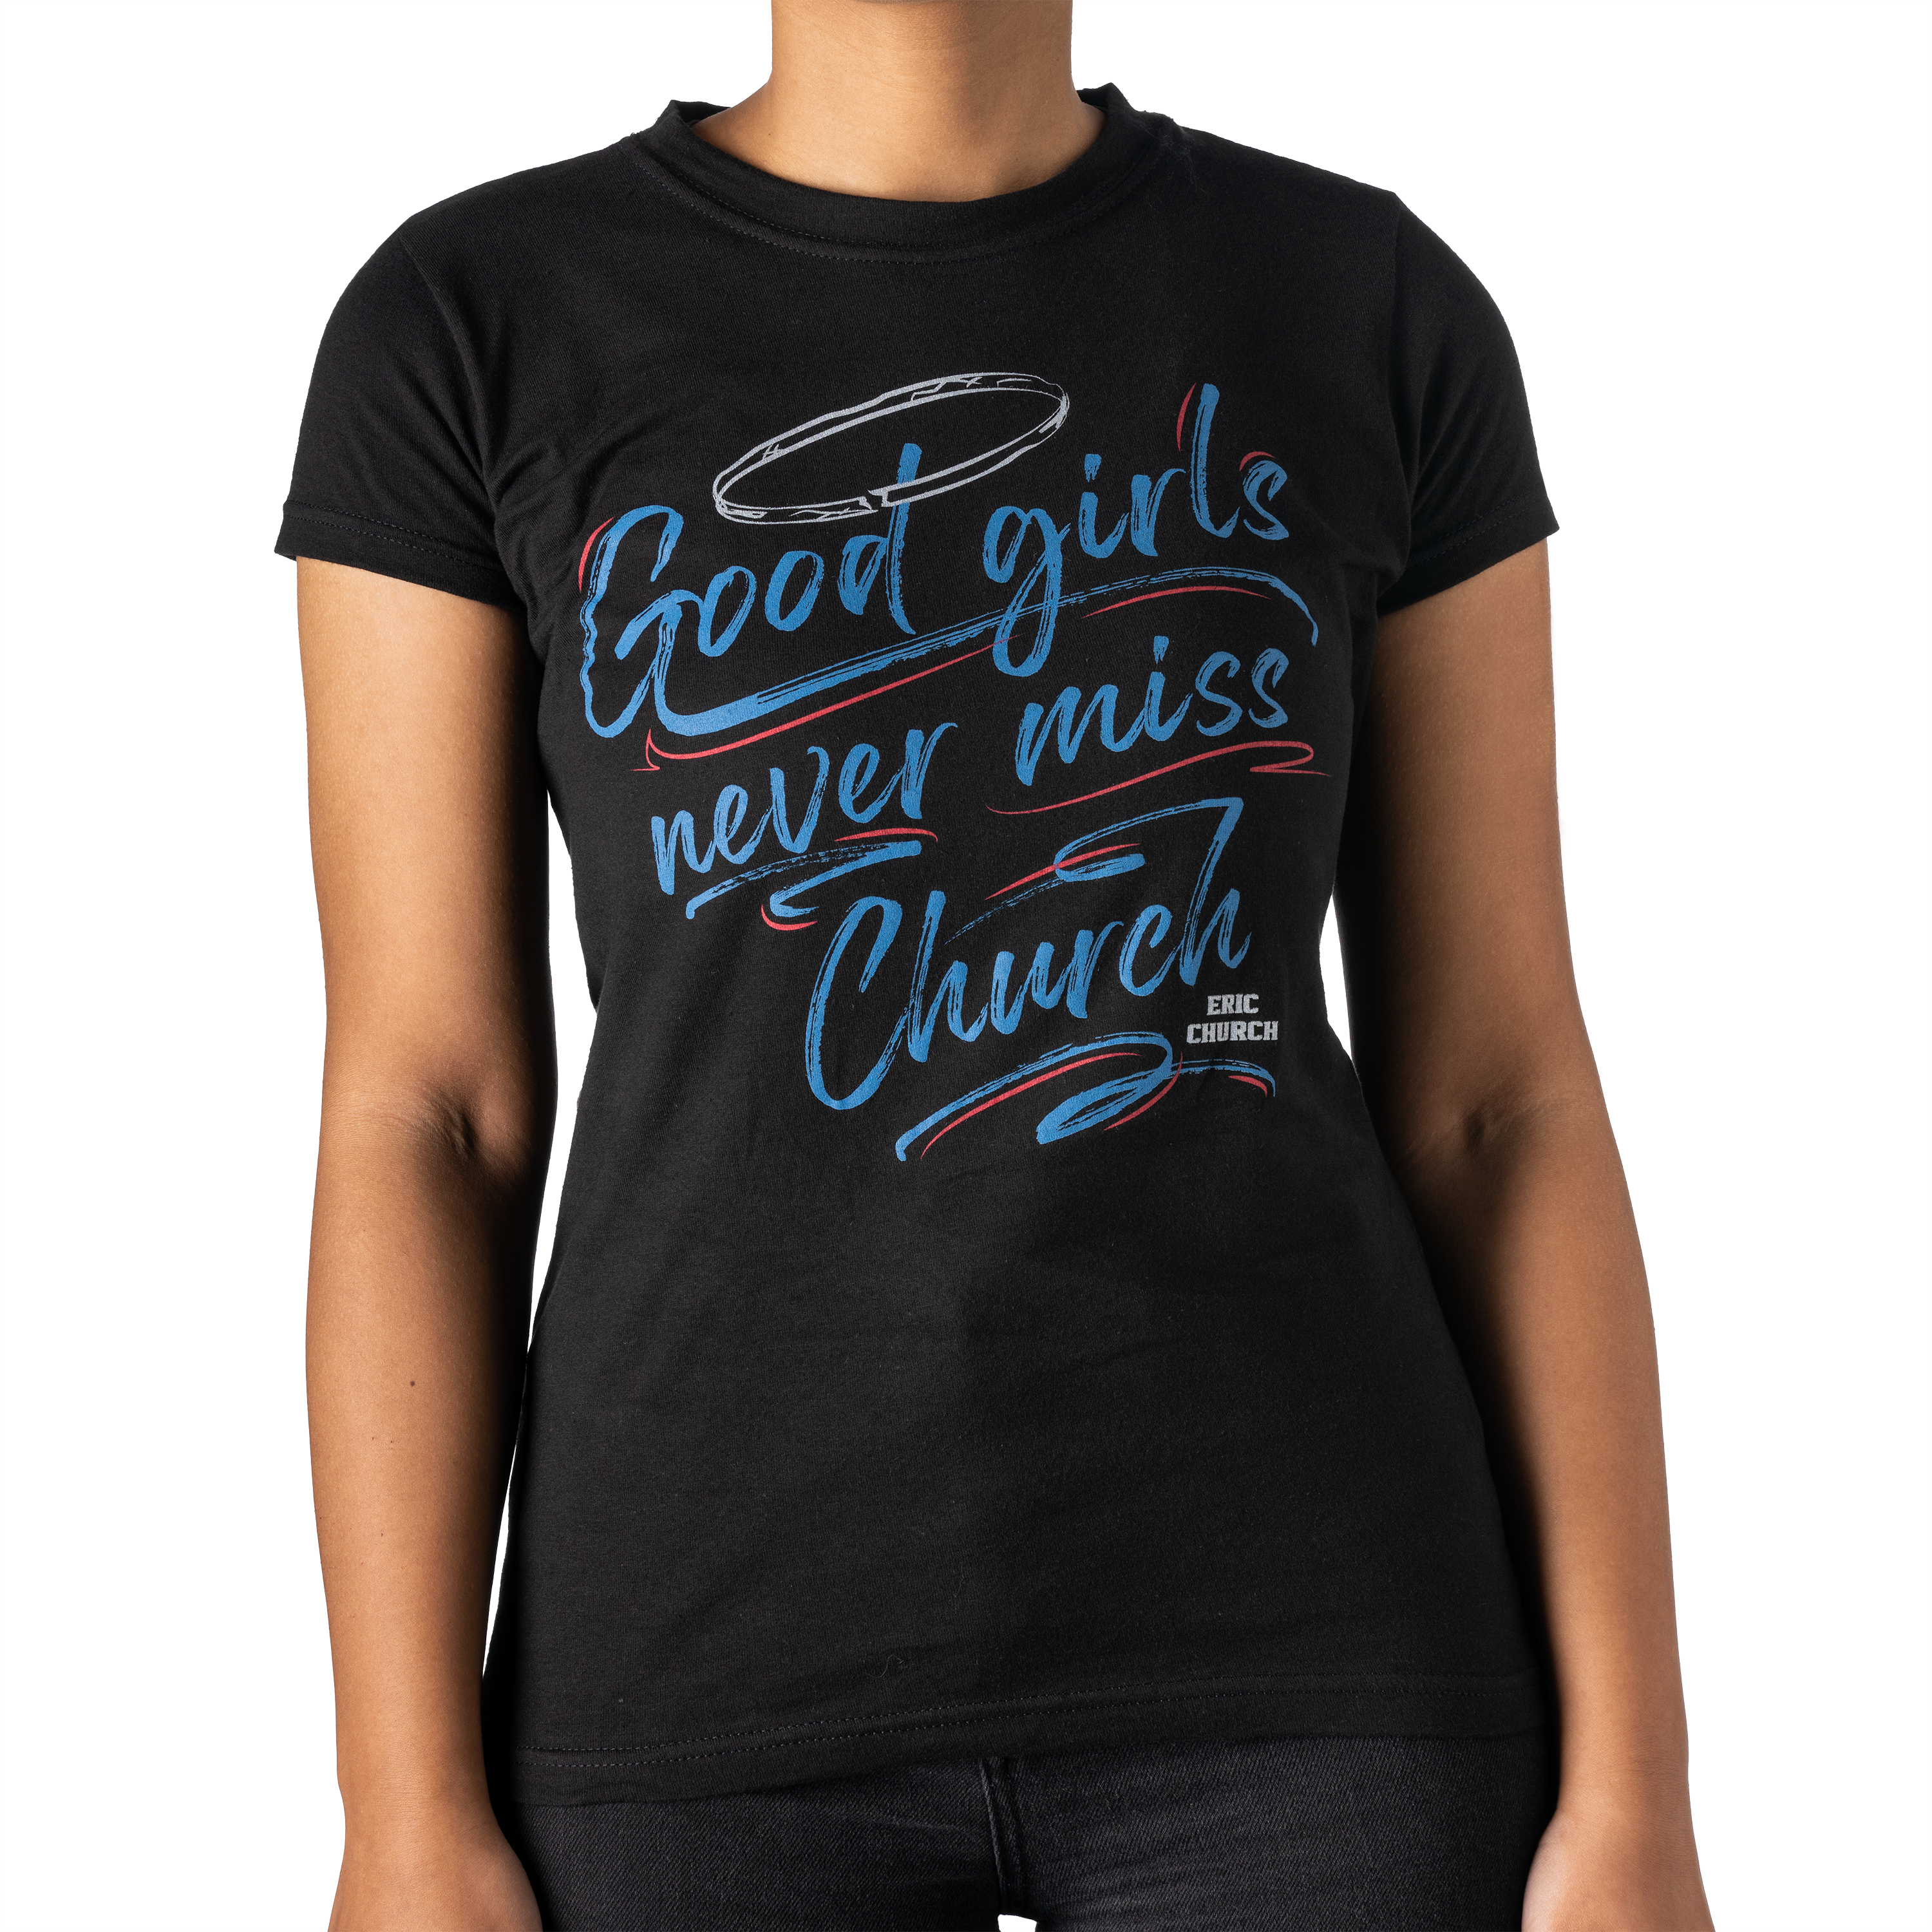 Good Girls Never Miss Church GAT T-Shirt